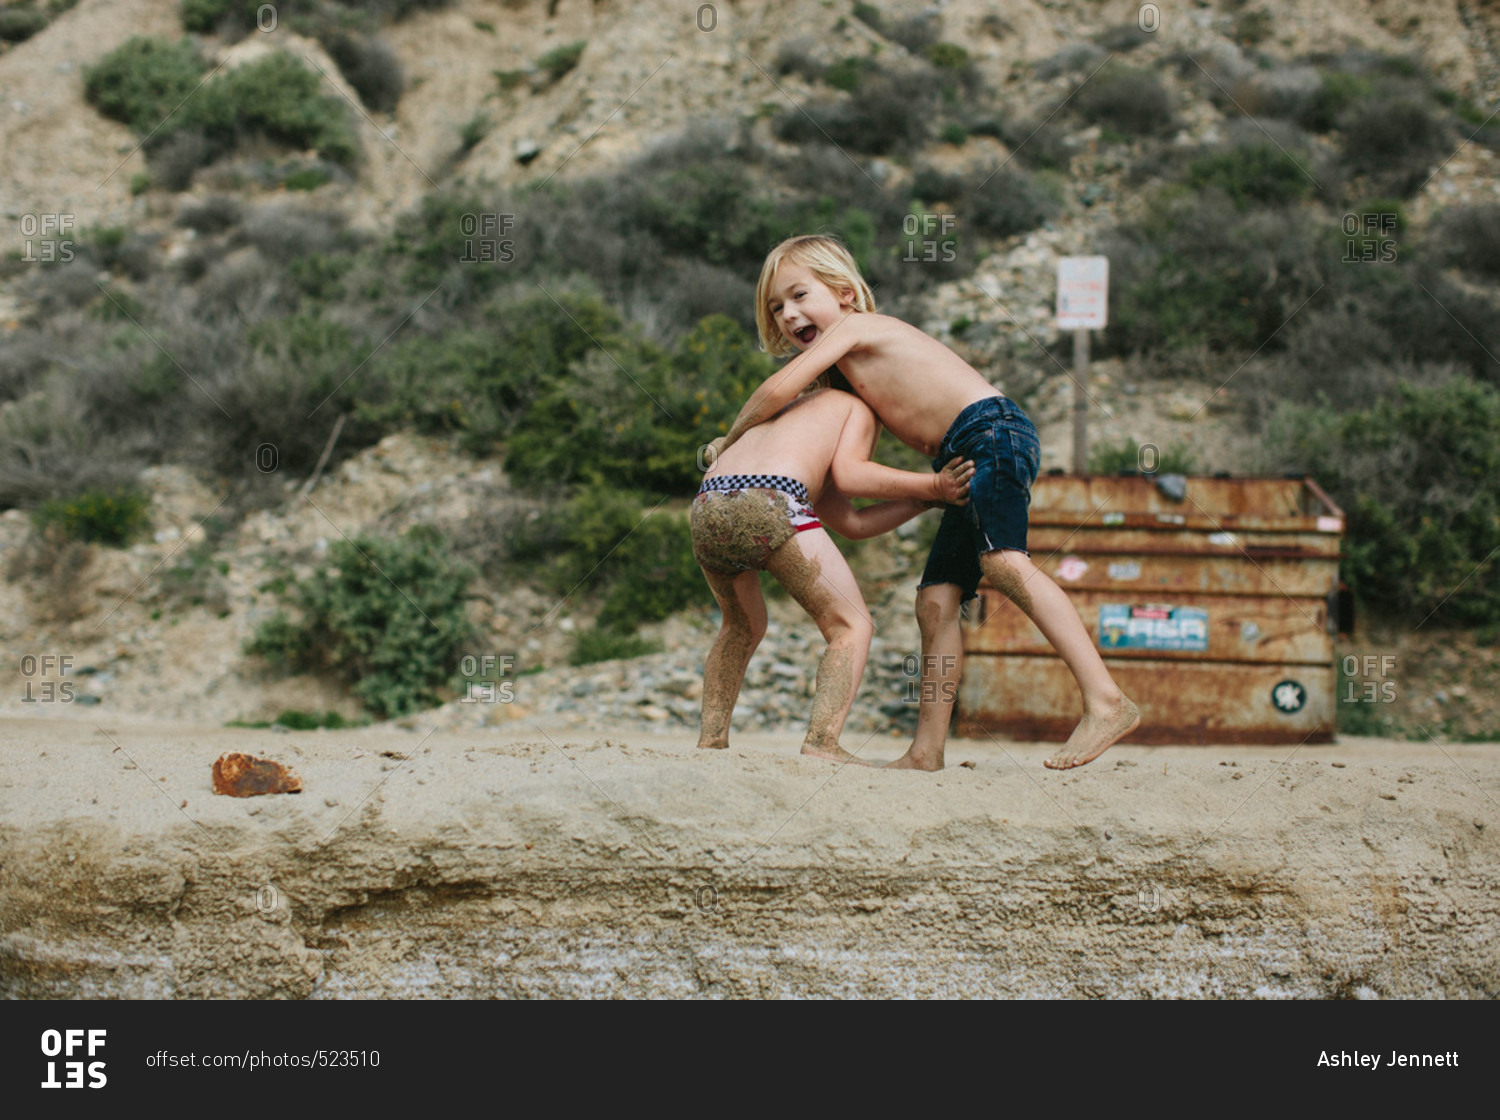 Two boys wrestling on a beach